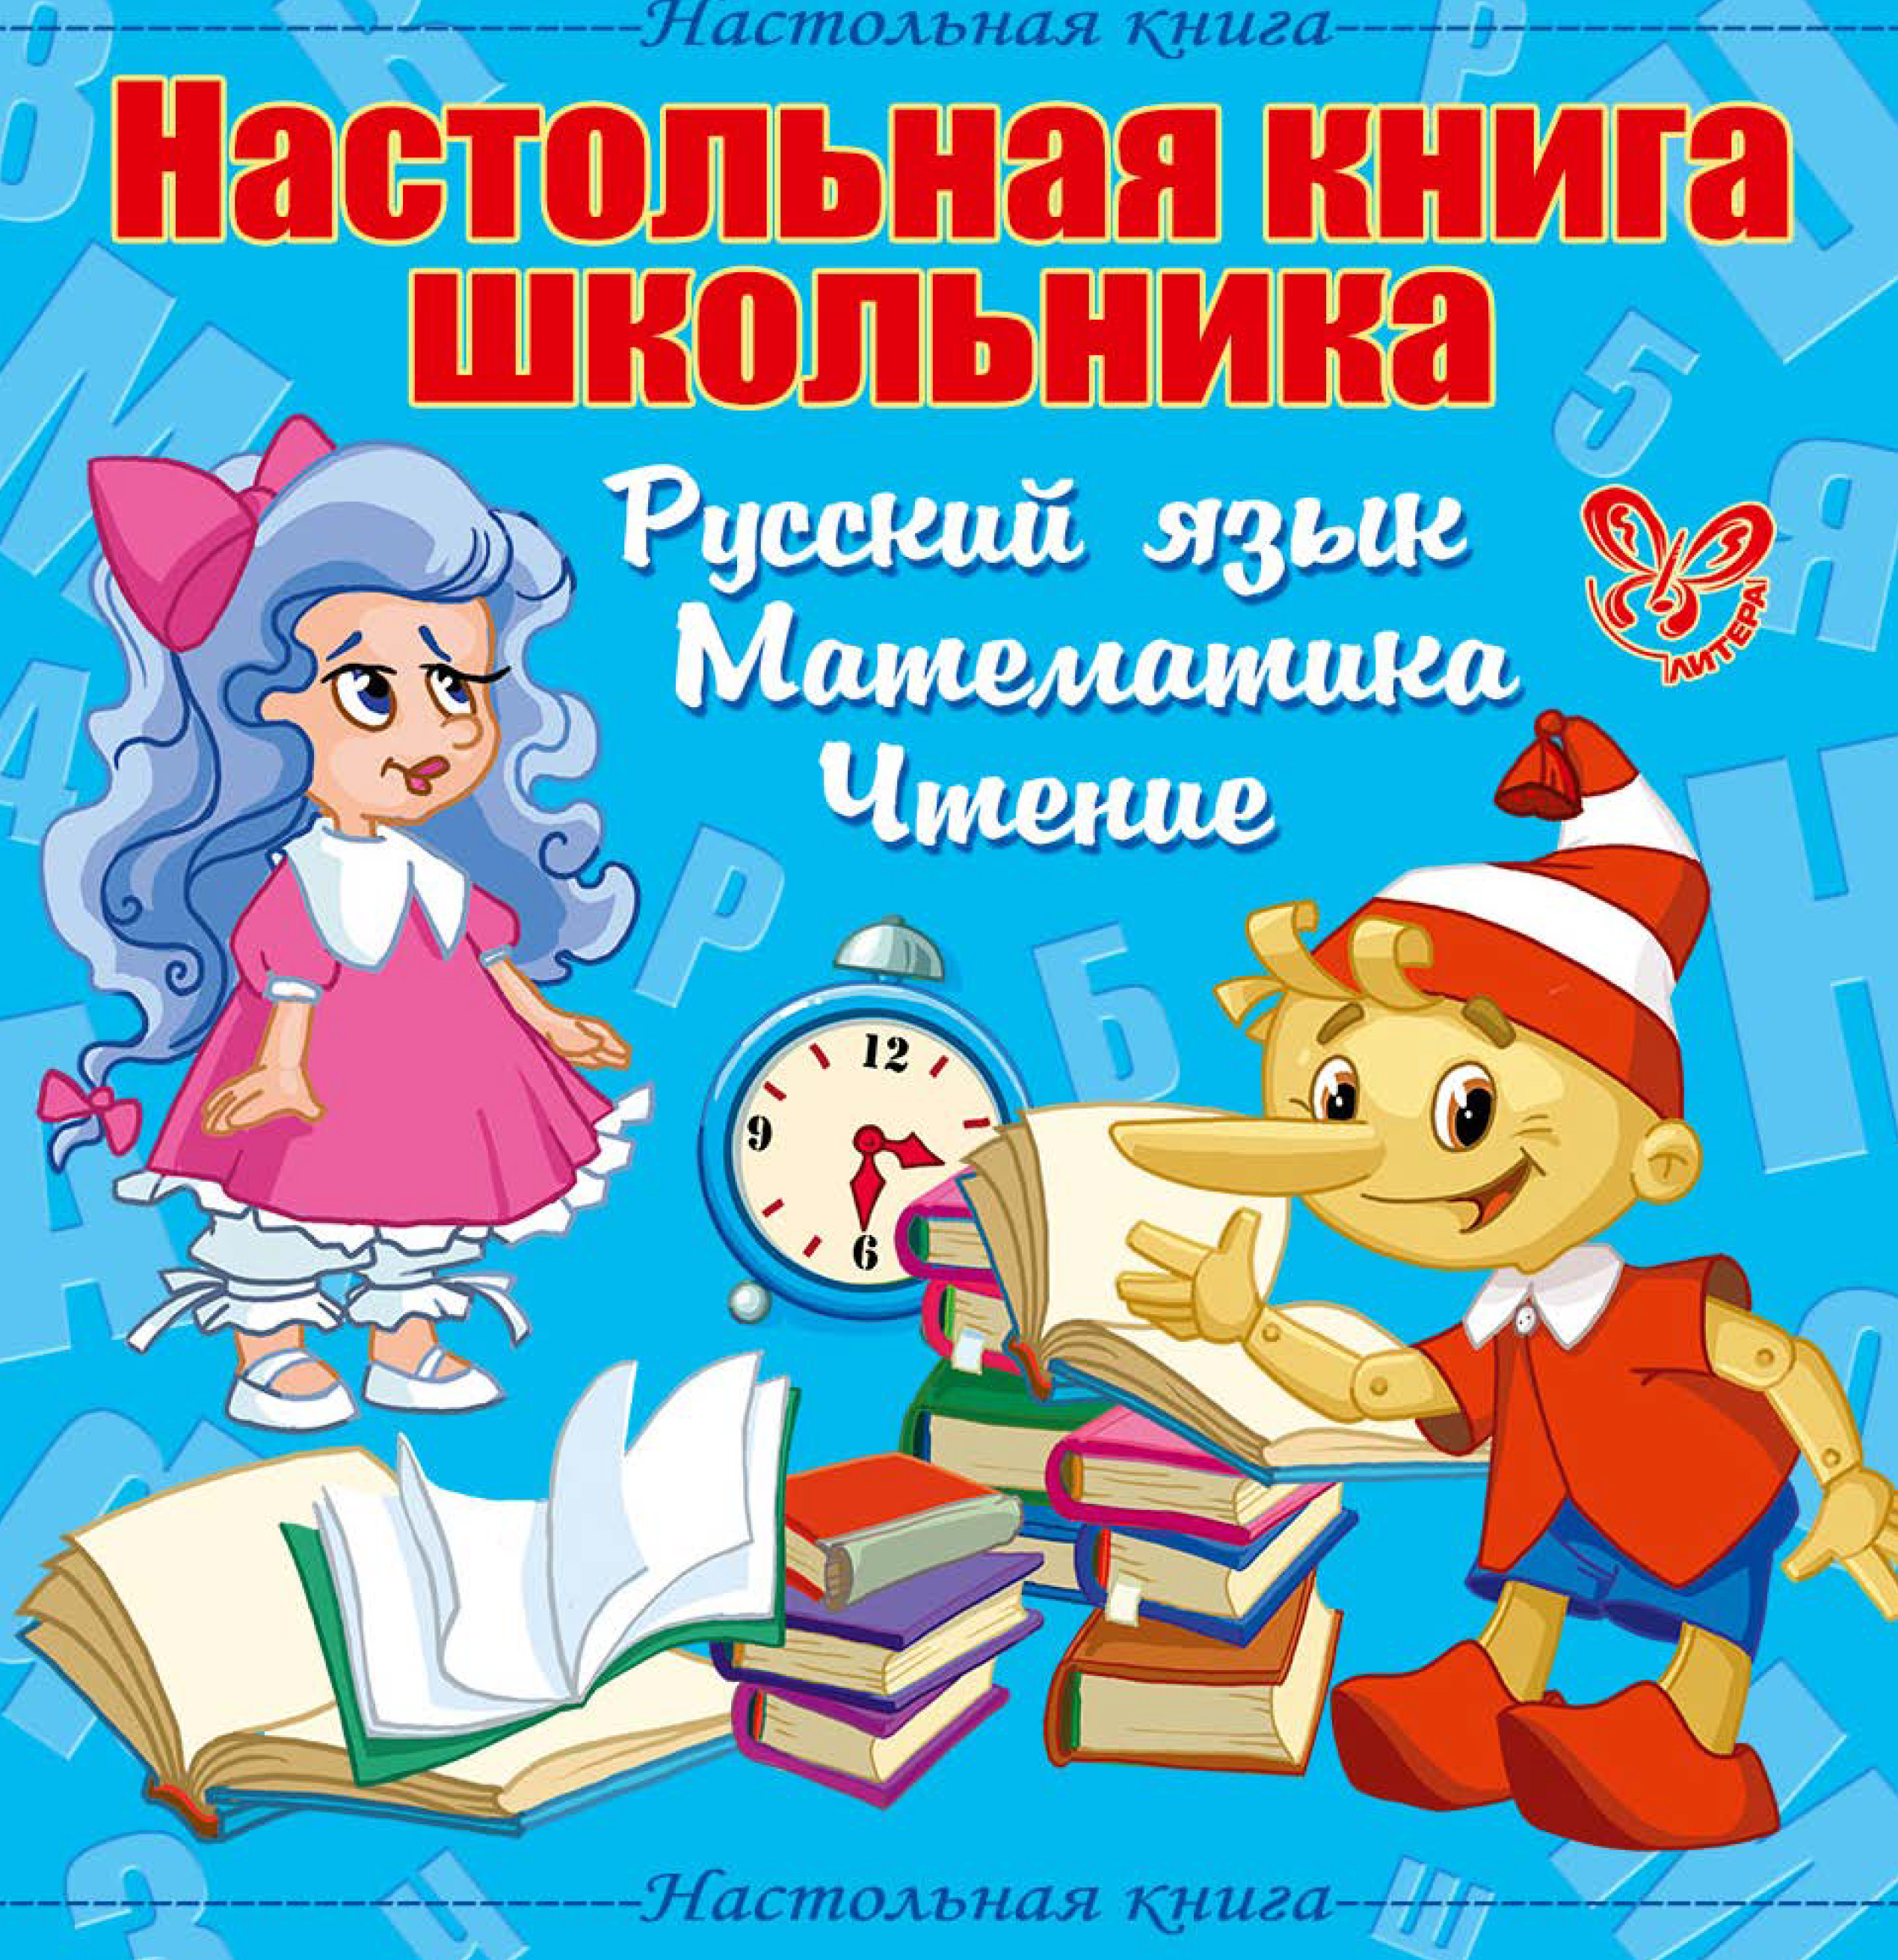 Настольная книга школьника: Русский язык, Математика, Чтение